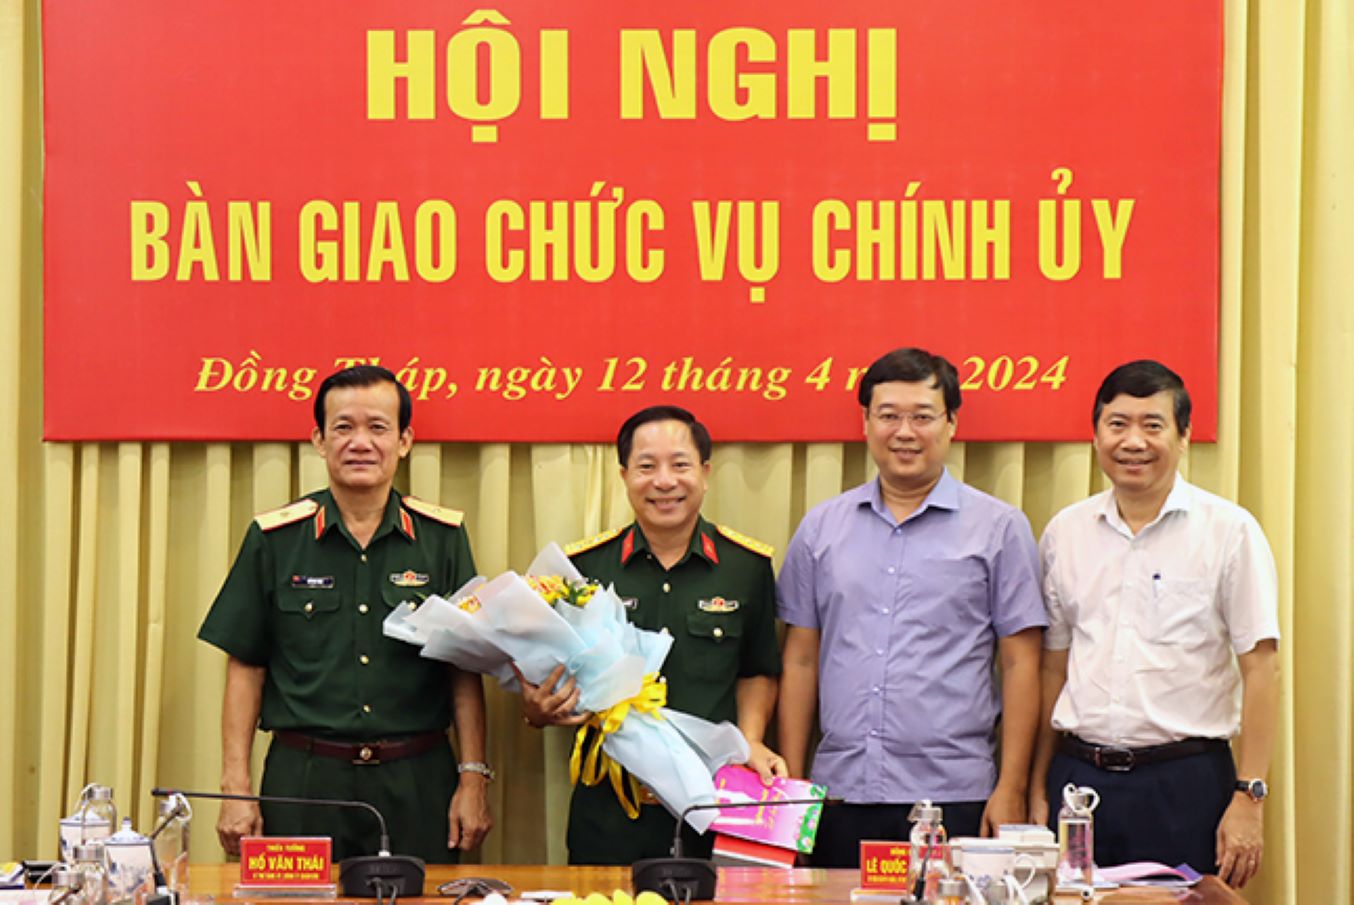 Bí thư Tỉnh ủy Đồng Tháp Lê Quốc Phong (thứ 2, phải sang) tặng hoa chúc mừng Đại tá Trịnh Hoàng Phong nhận nhiệm vụ mới tại Quân khu 9 vào tháng 4.2024. Ảnh: Cổng thông tin tỉnh Đồng Tháp